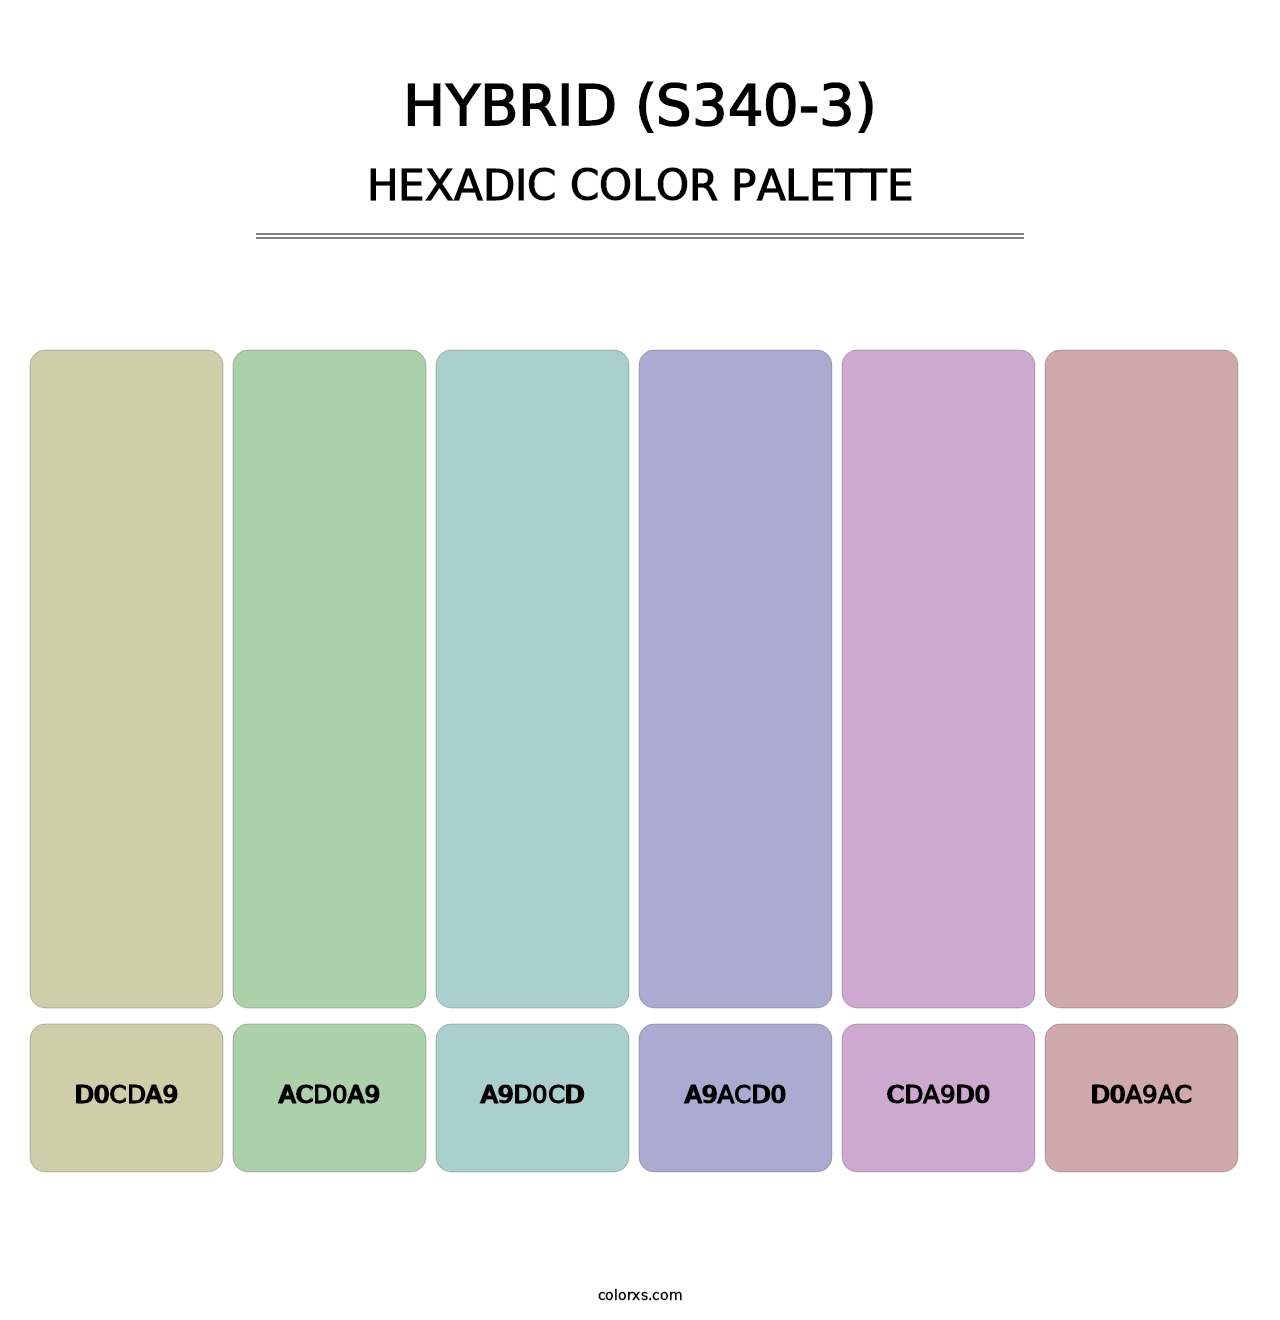 Hybrid (S340-3) - Hexadic Color Palette